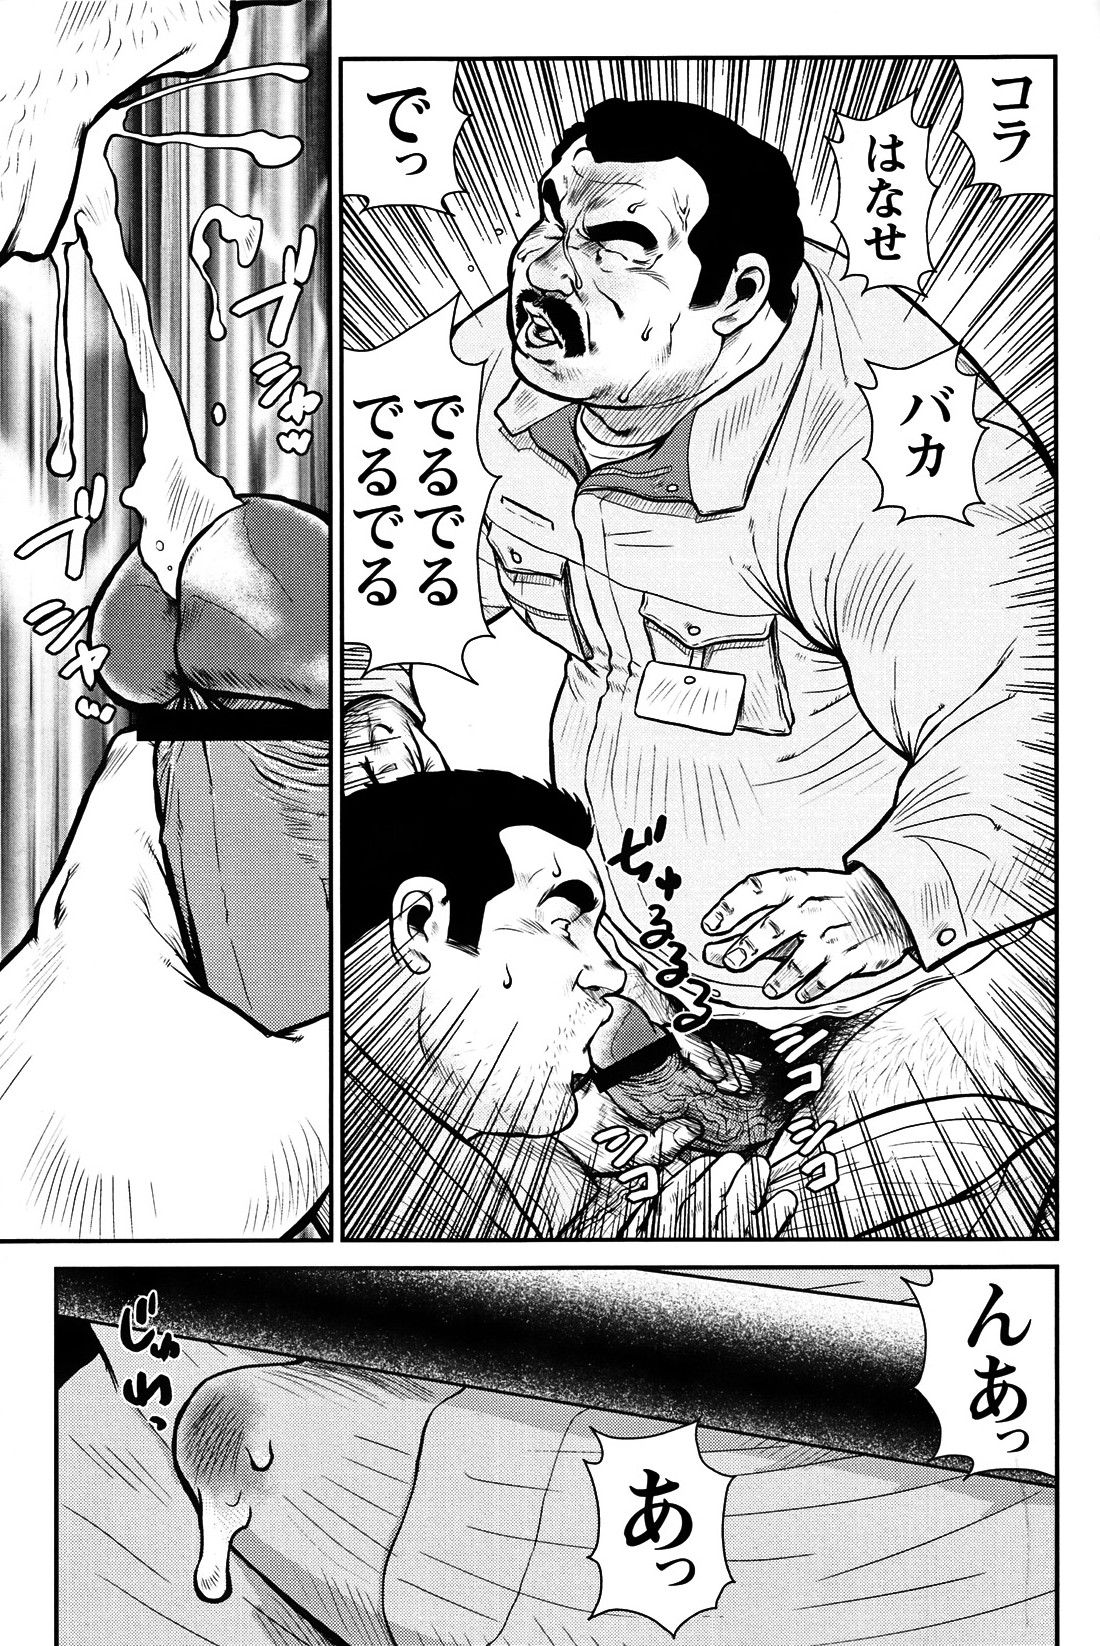 Comic G-men Gaho No. 06 Nikutai Roudousha page 34 full